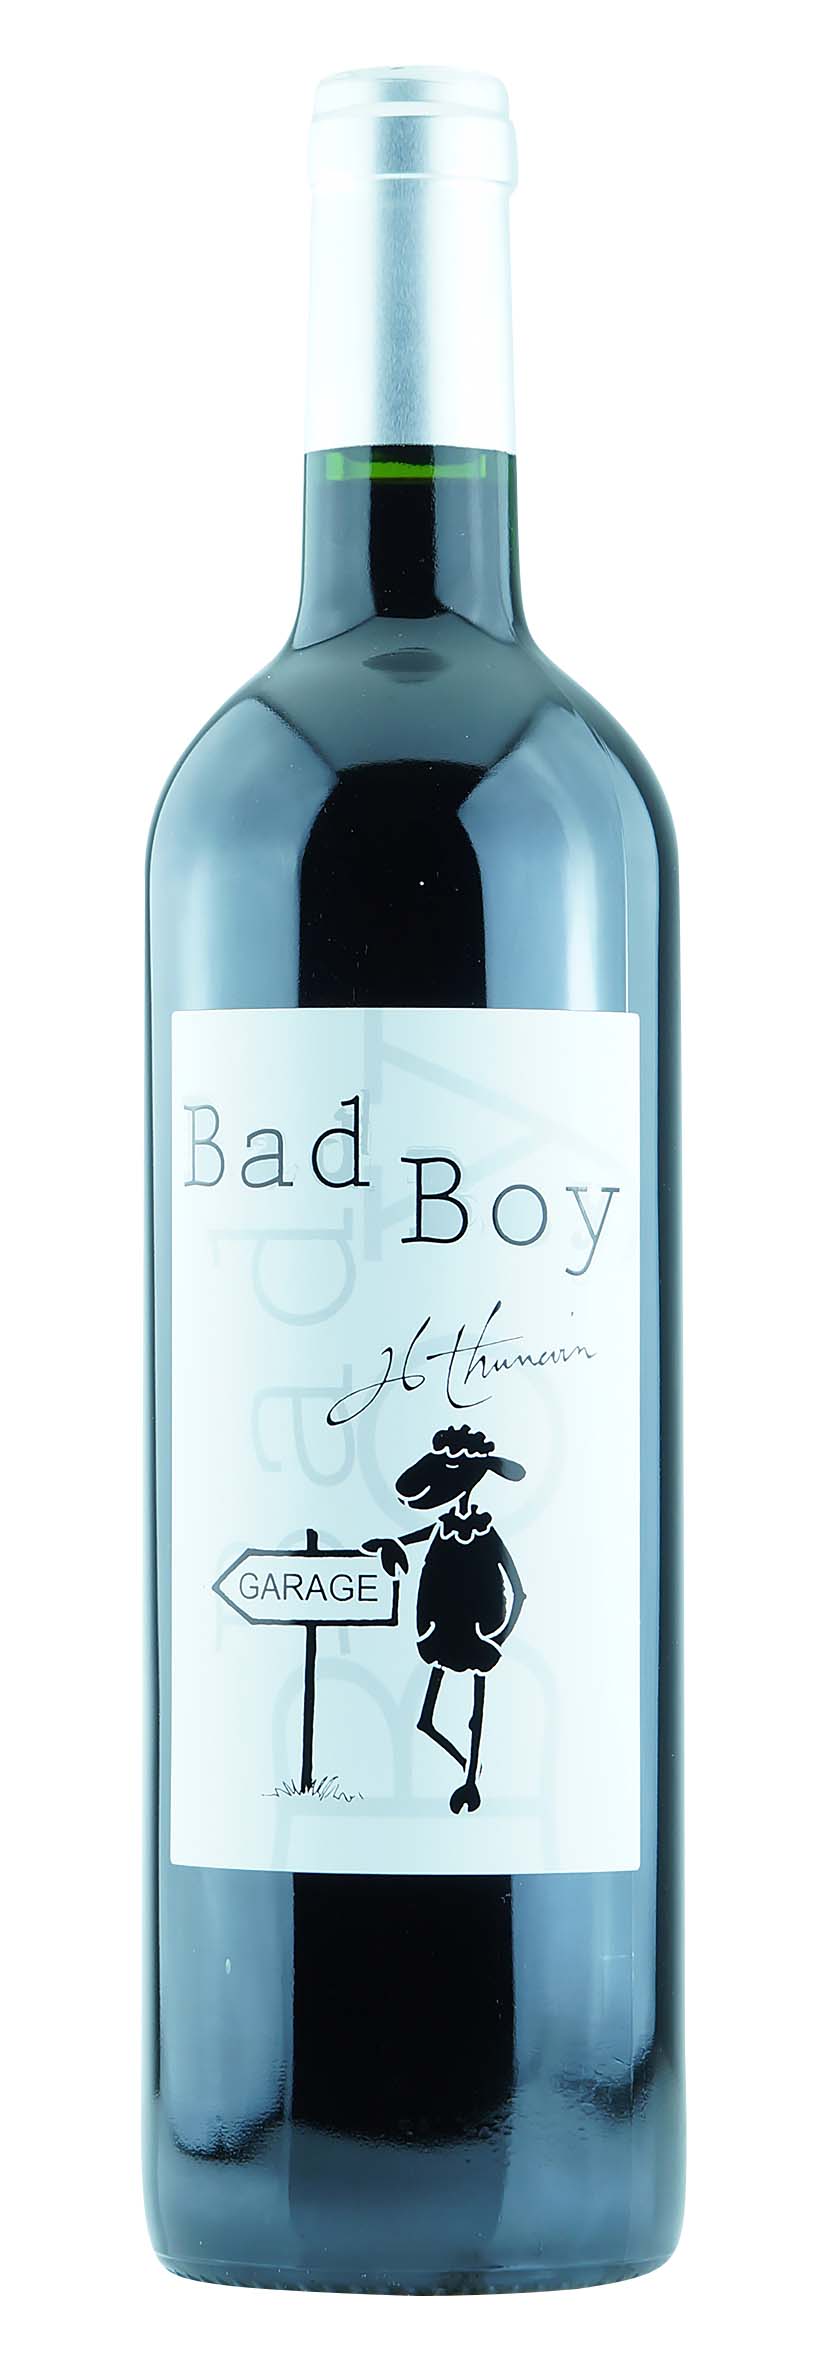 Bordeaux AOC Bad Boy 2014